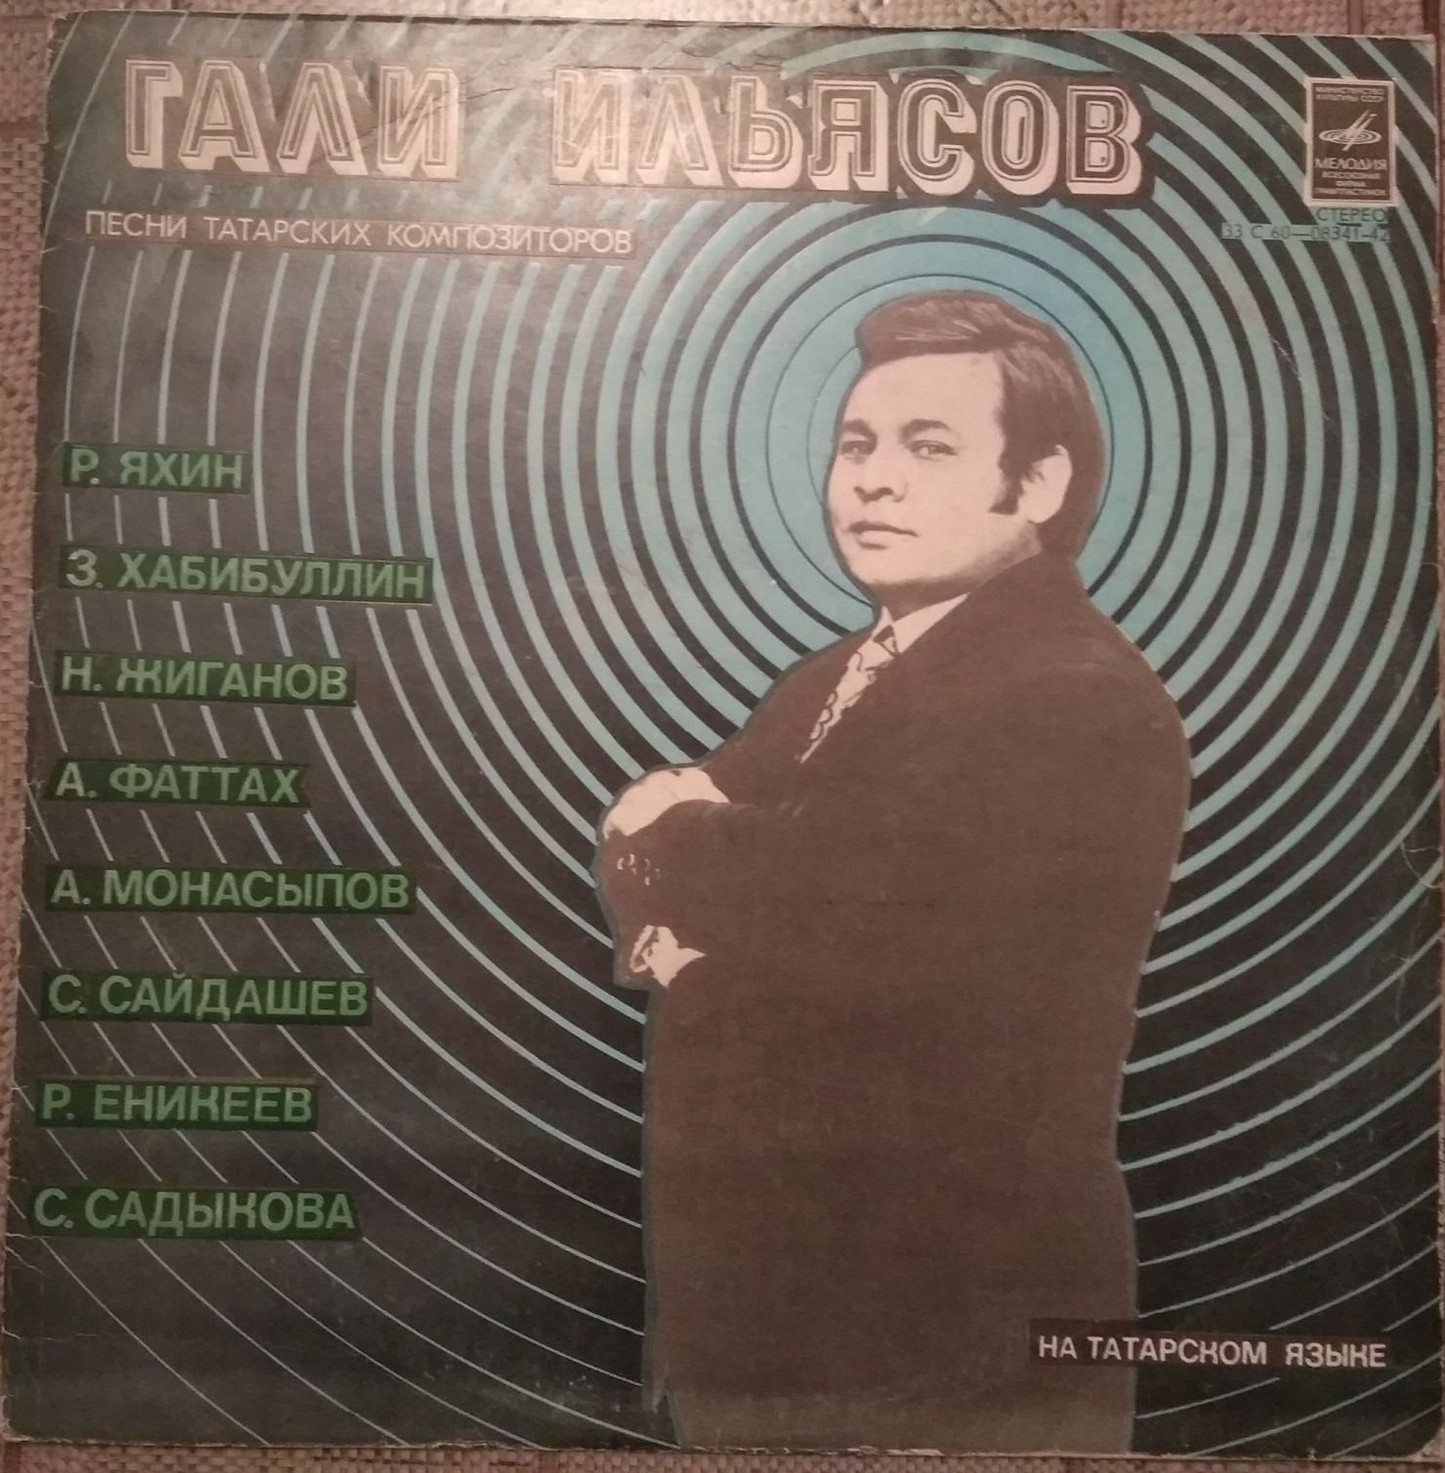 Гали ИЛЬЯСОВ (тенор): «Песни татарских композиторов»